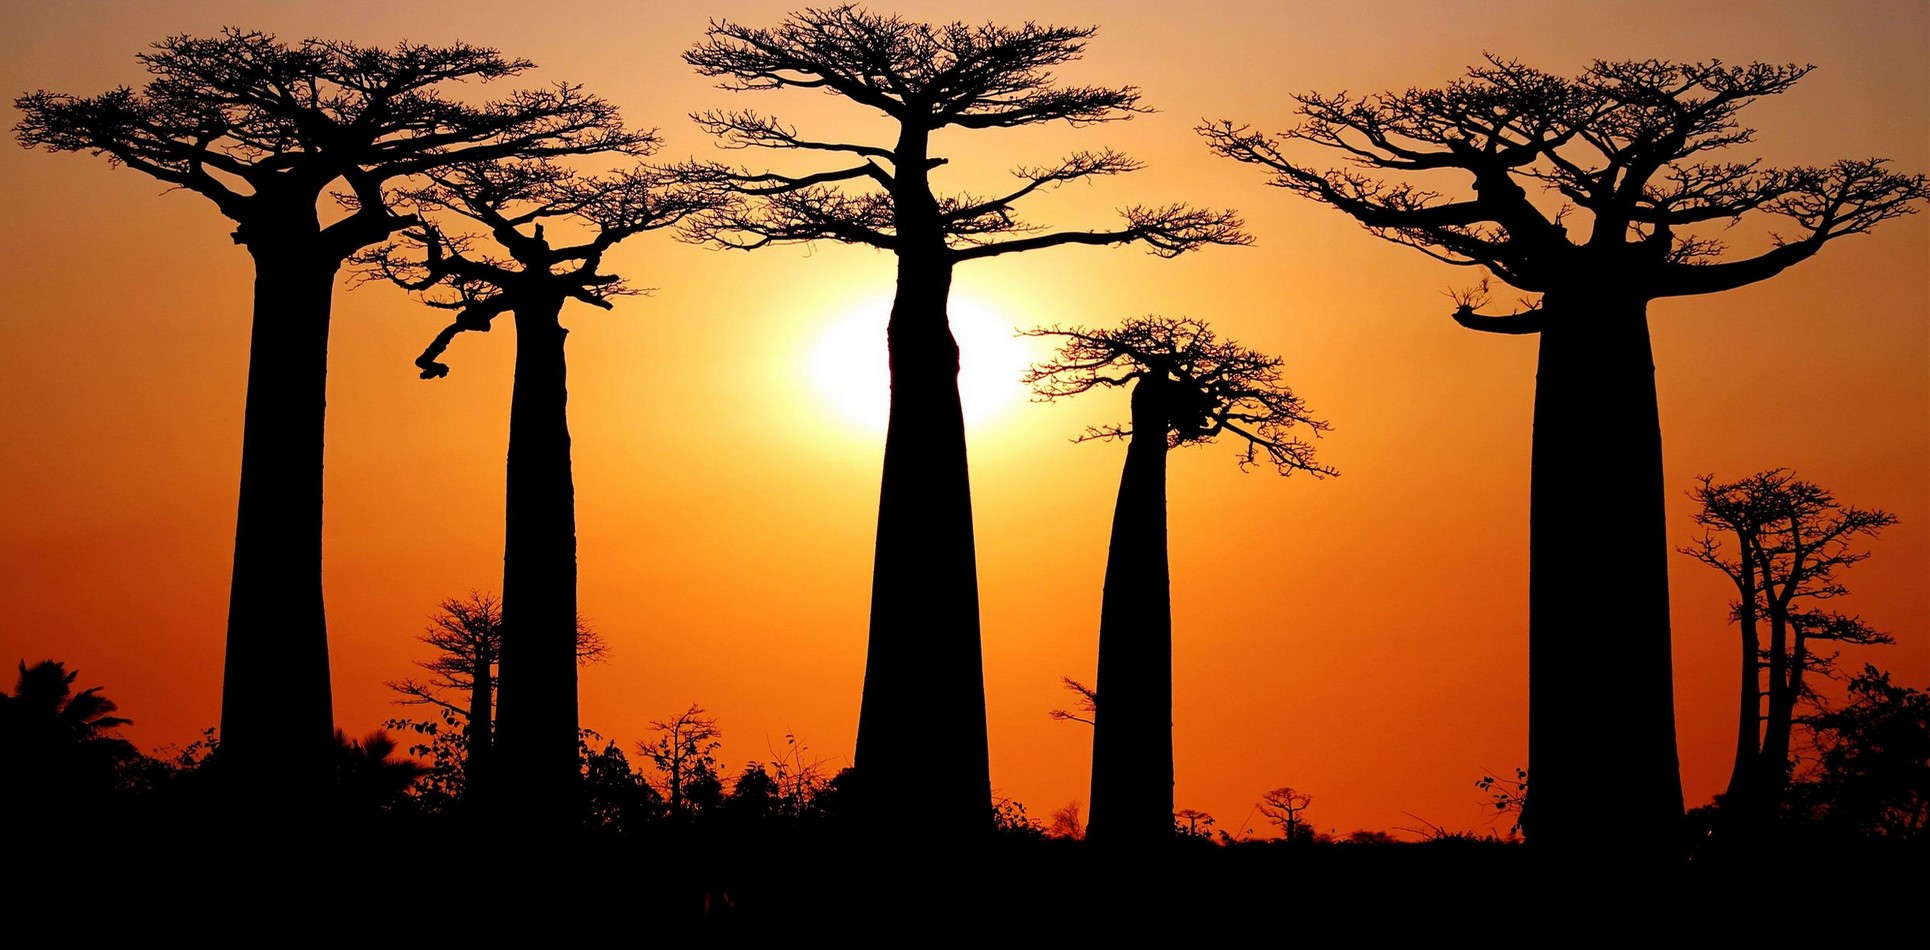 entete du site, foret de baobabs au soleil couchant